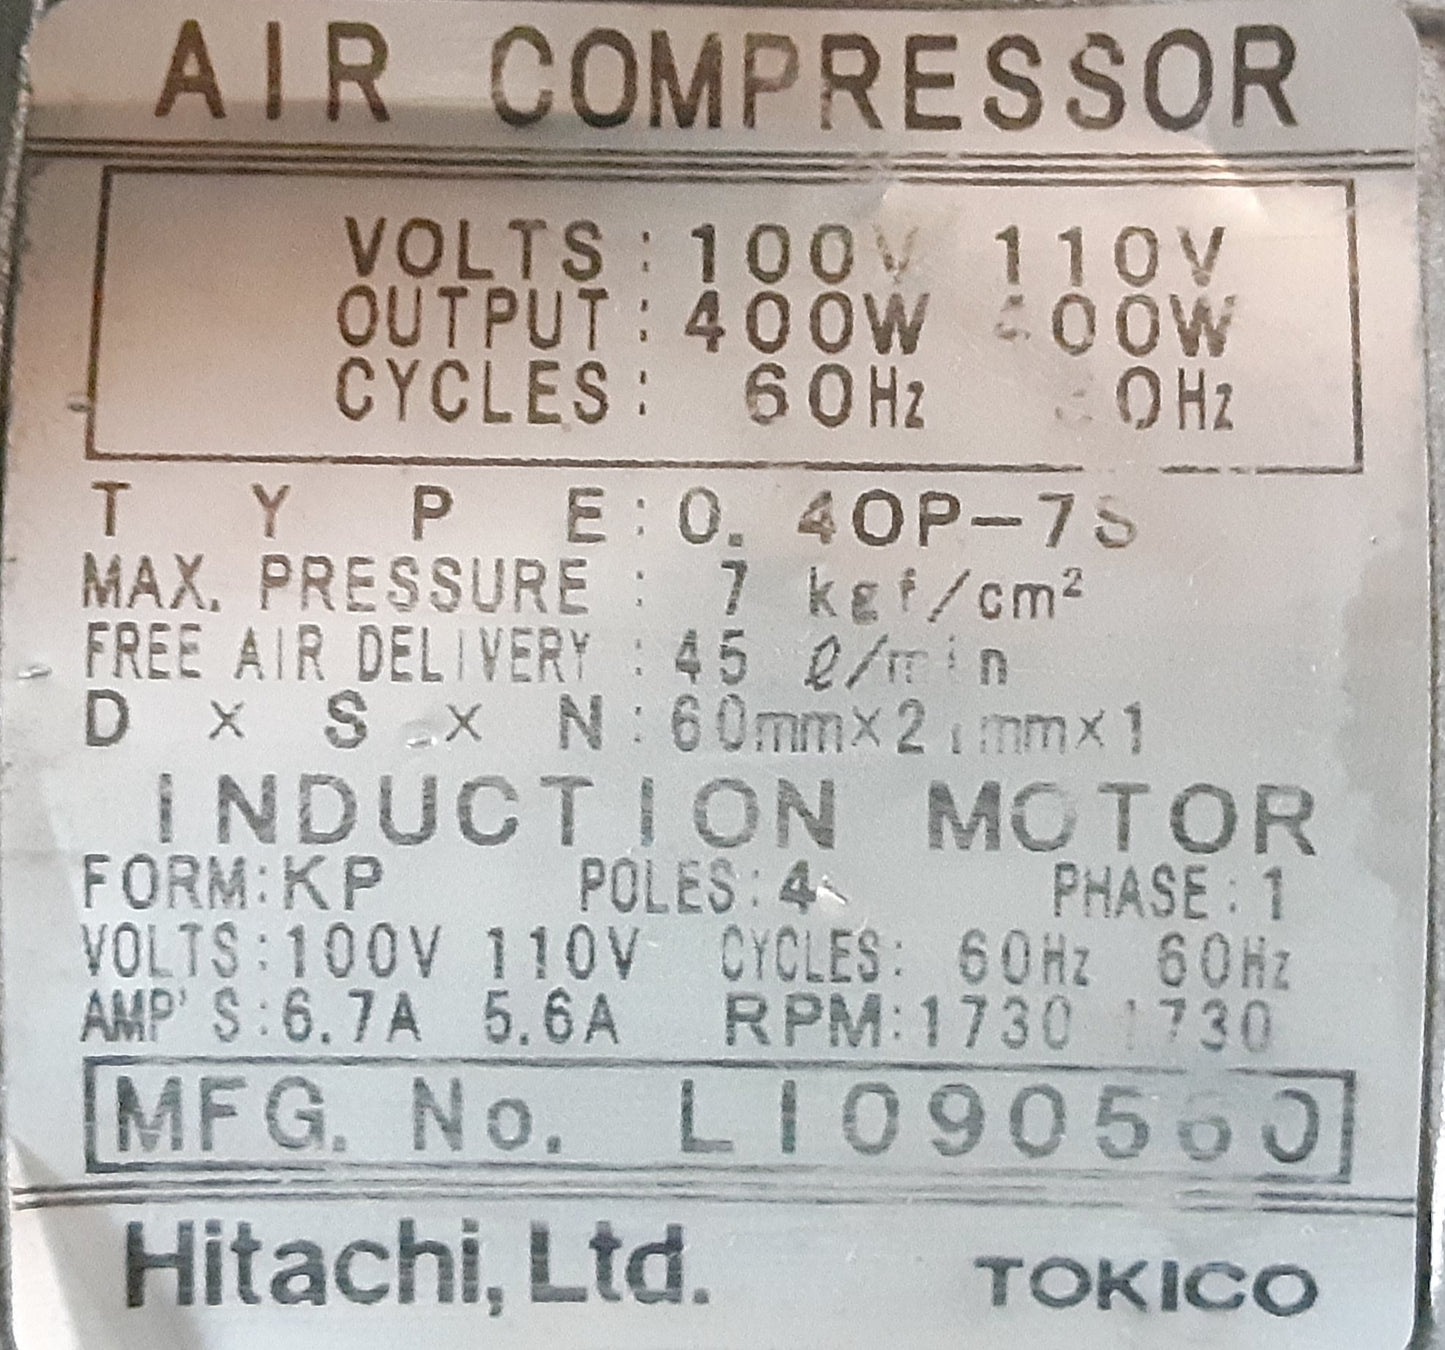 日立産機システム(HITACHI)製 オイルフリーベビコン 0.4OP-7S コンプレッサー 吐出空気量45L/min hitachisanki1-04op7s45lmin-8001